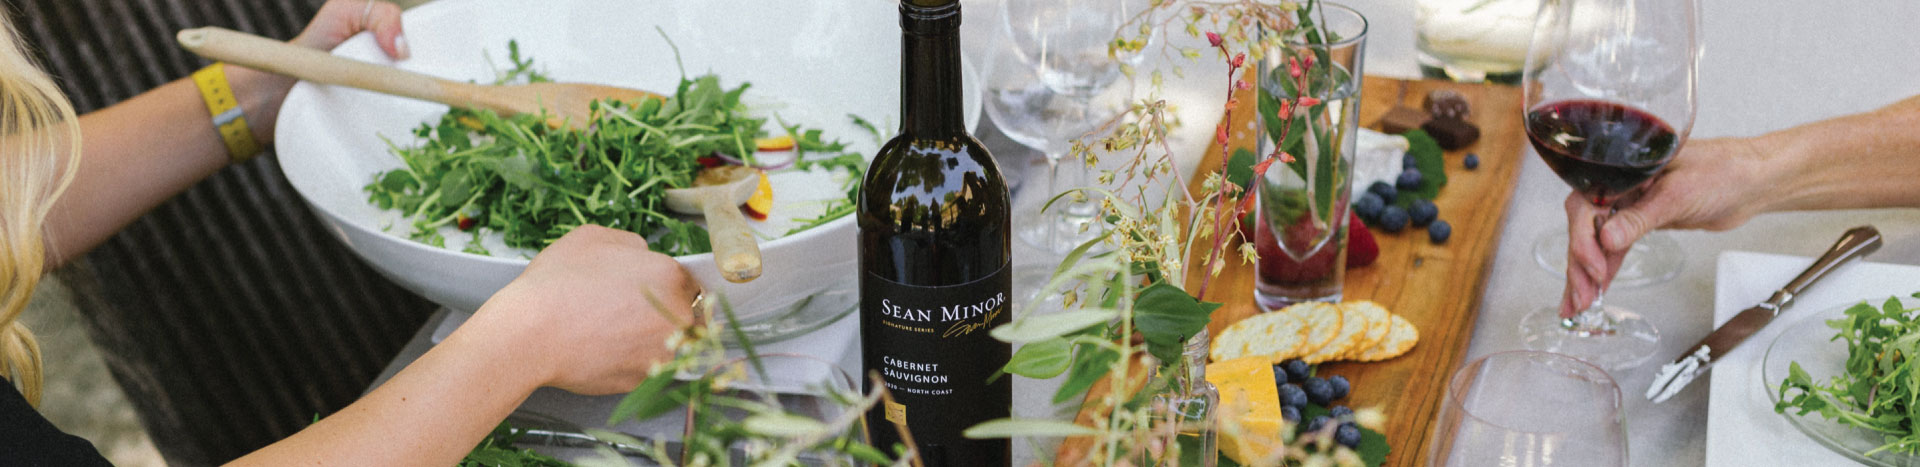 Sean Minor Wines on a dinner table